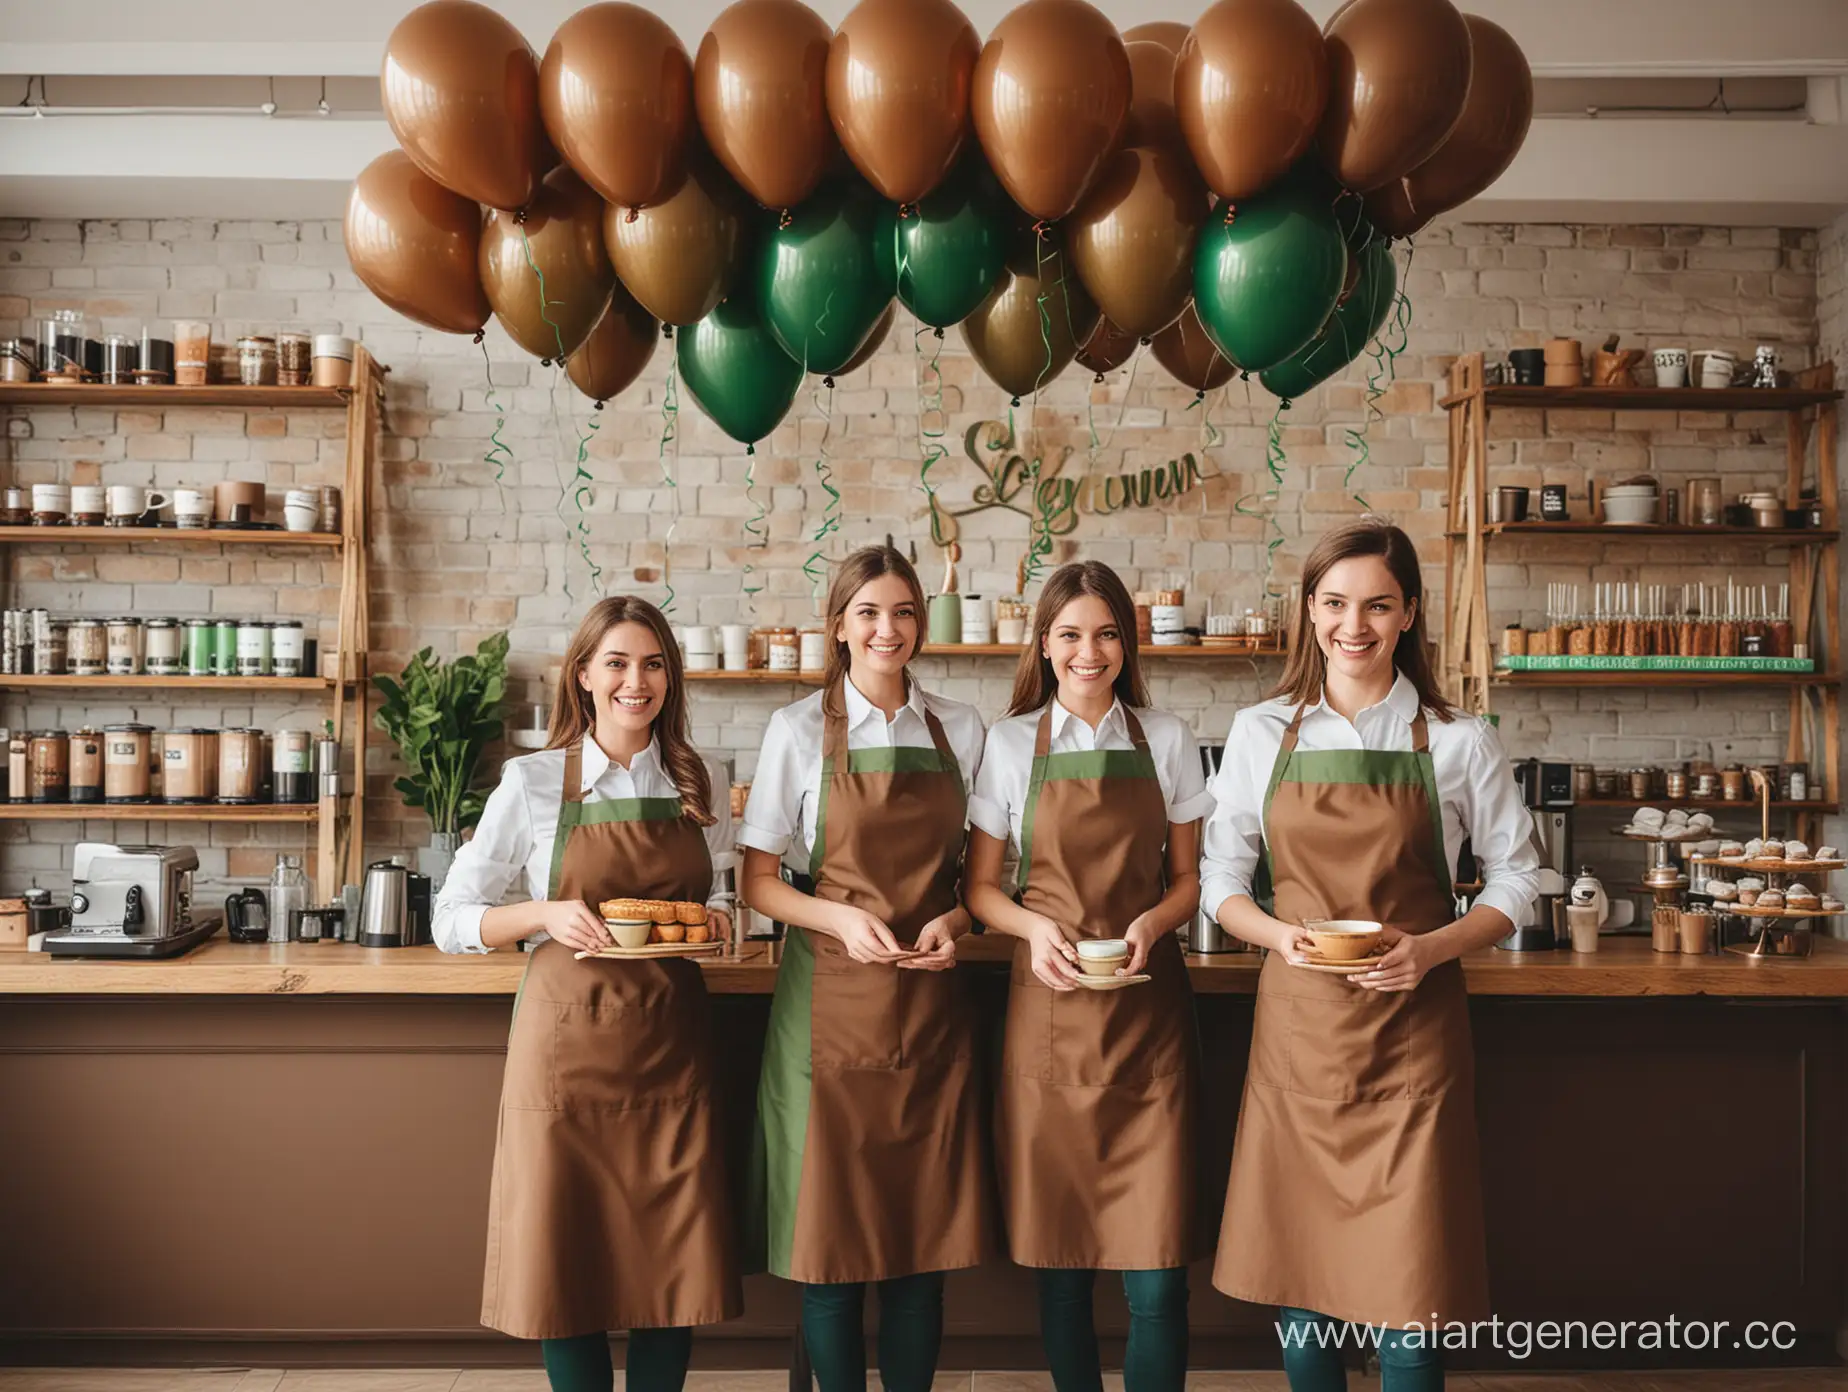 Праздничное открытие магазина чая и кофе, воздушные шарики коричневого и зеленого цвета, радостные сотрудники в коричневых фартуках